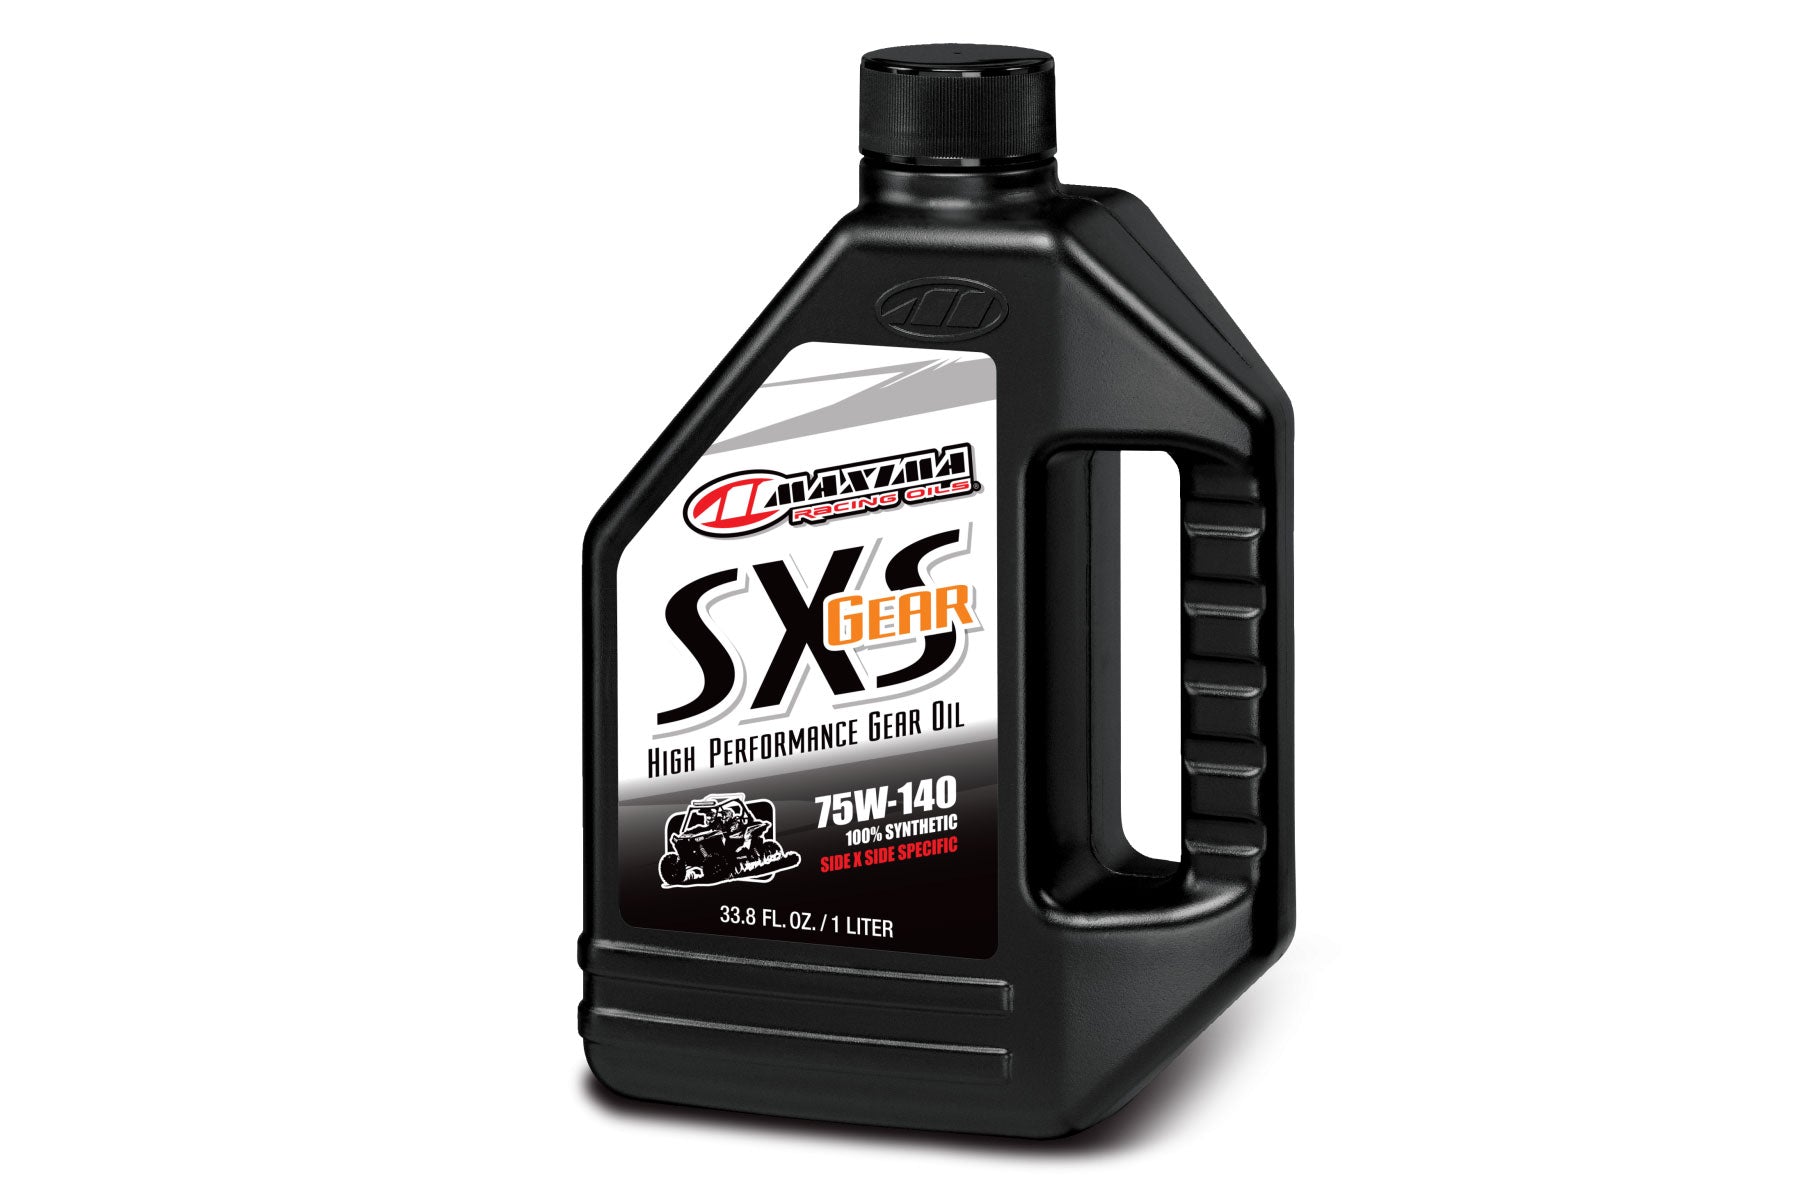 Gear Oil 75W40 - 100% Synthetic (SXS)